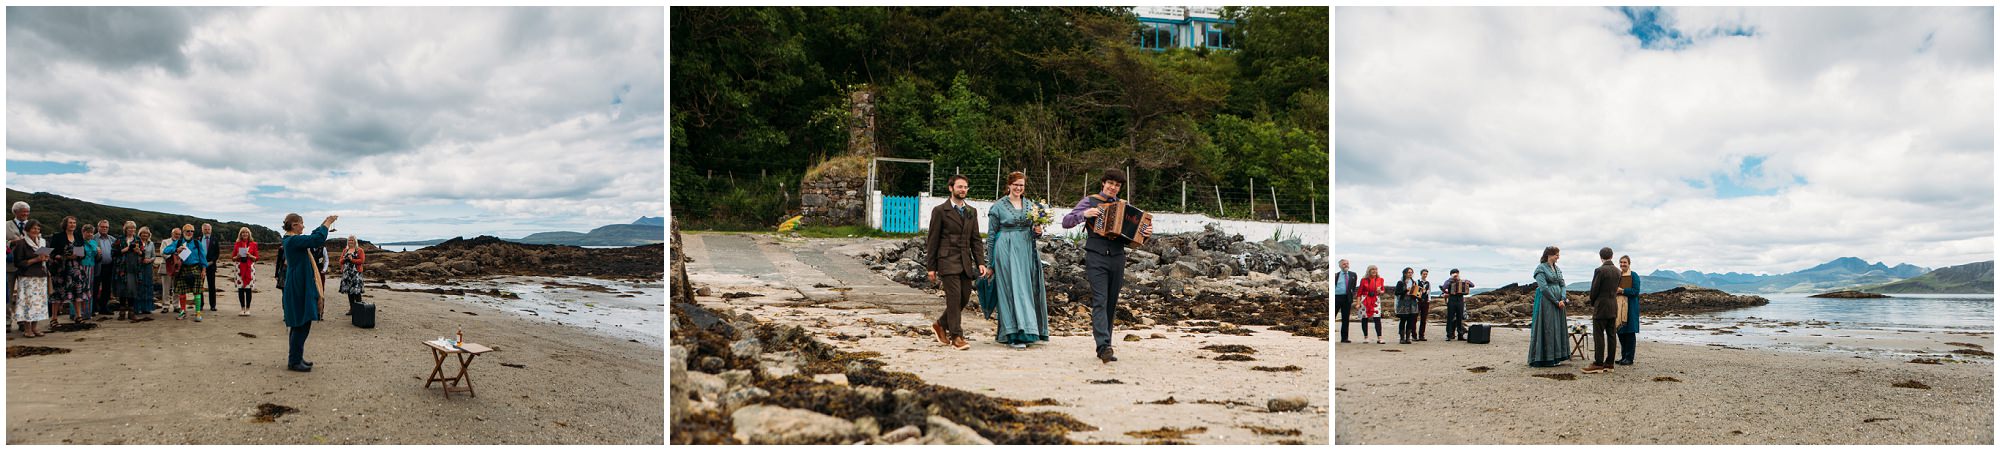 Isle of Skye Beach wedding photography, Morris dancer wedding, musicians wedding, elopement Isle of Skye